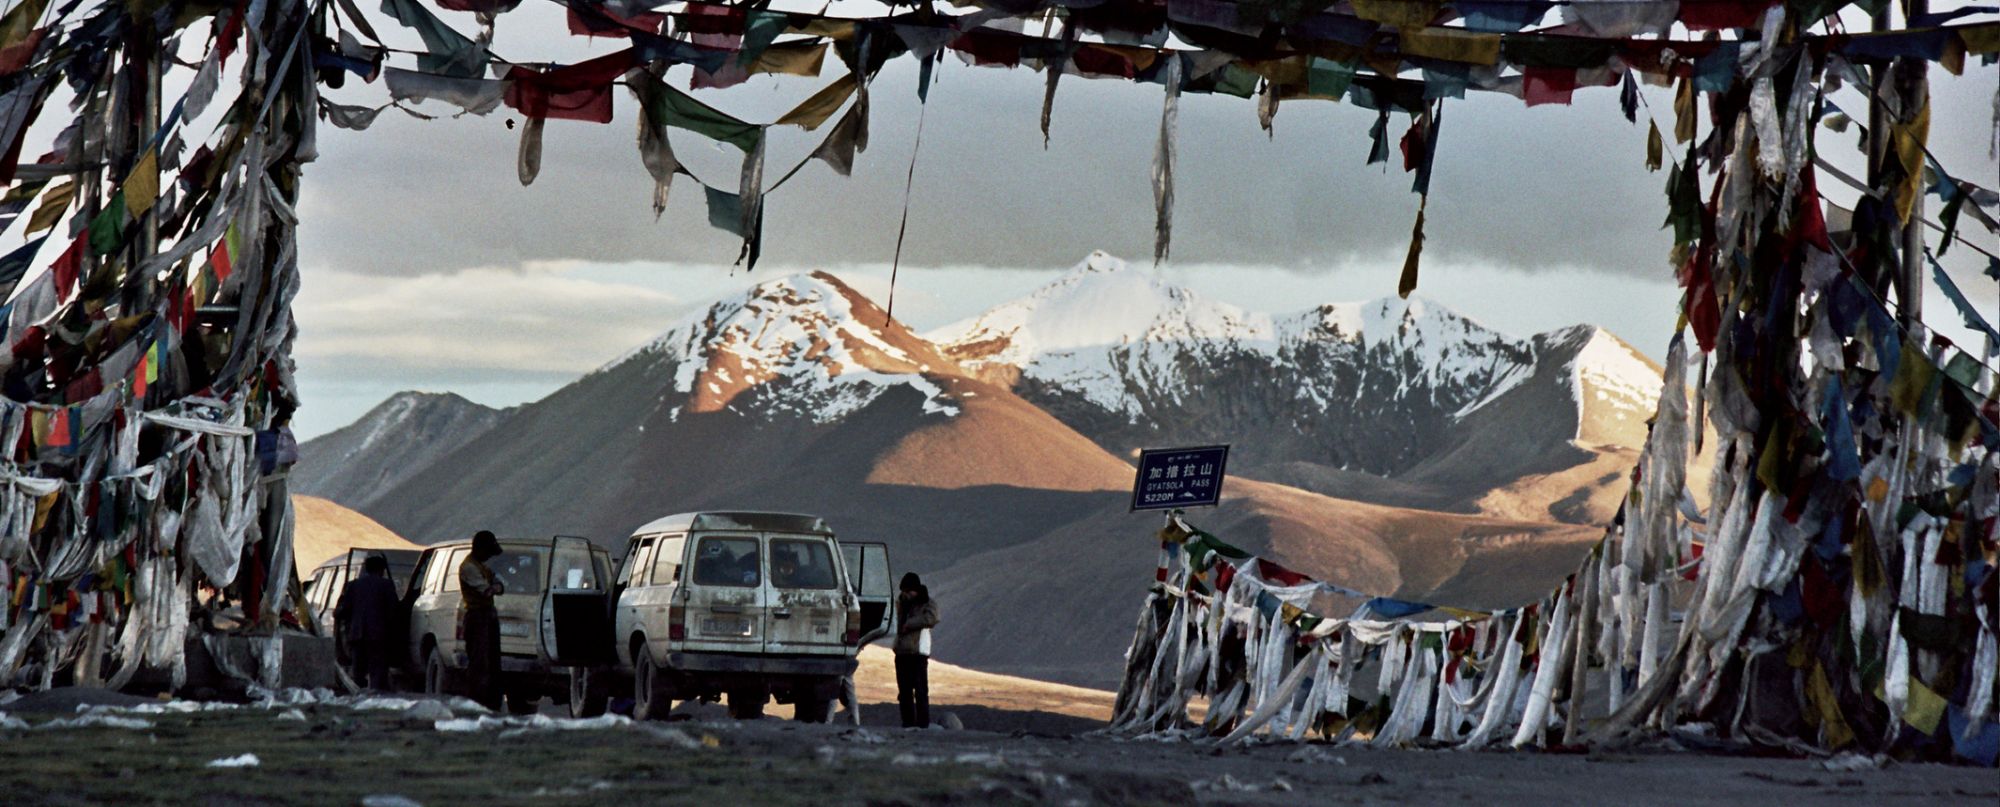 Tíbet y Nepal -  Ascendiendo a las tierras más altas del Planeta - Salidas de JUL a NOV